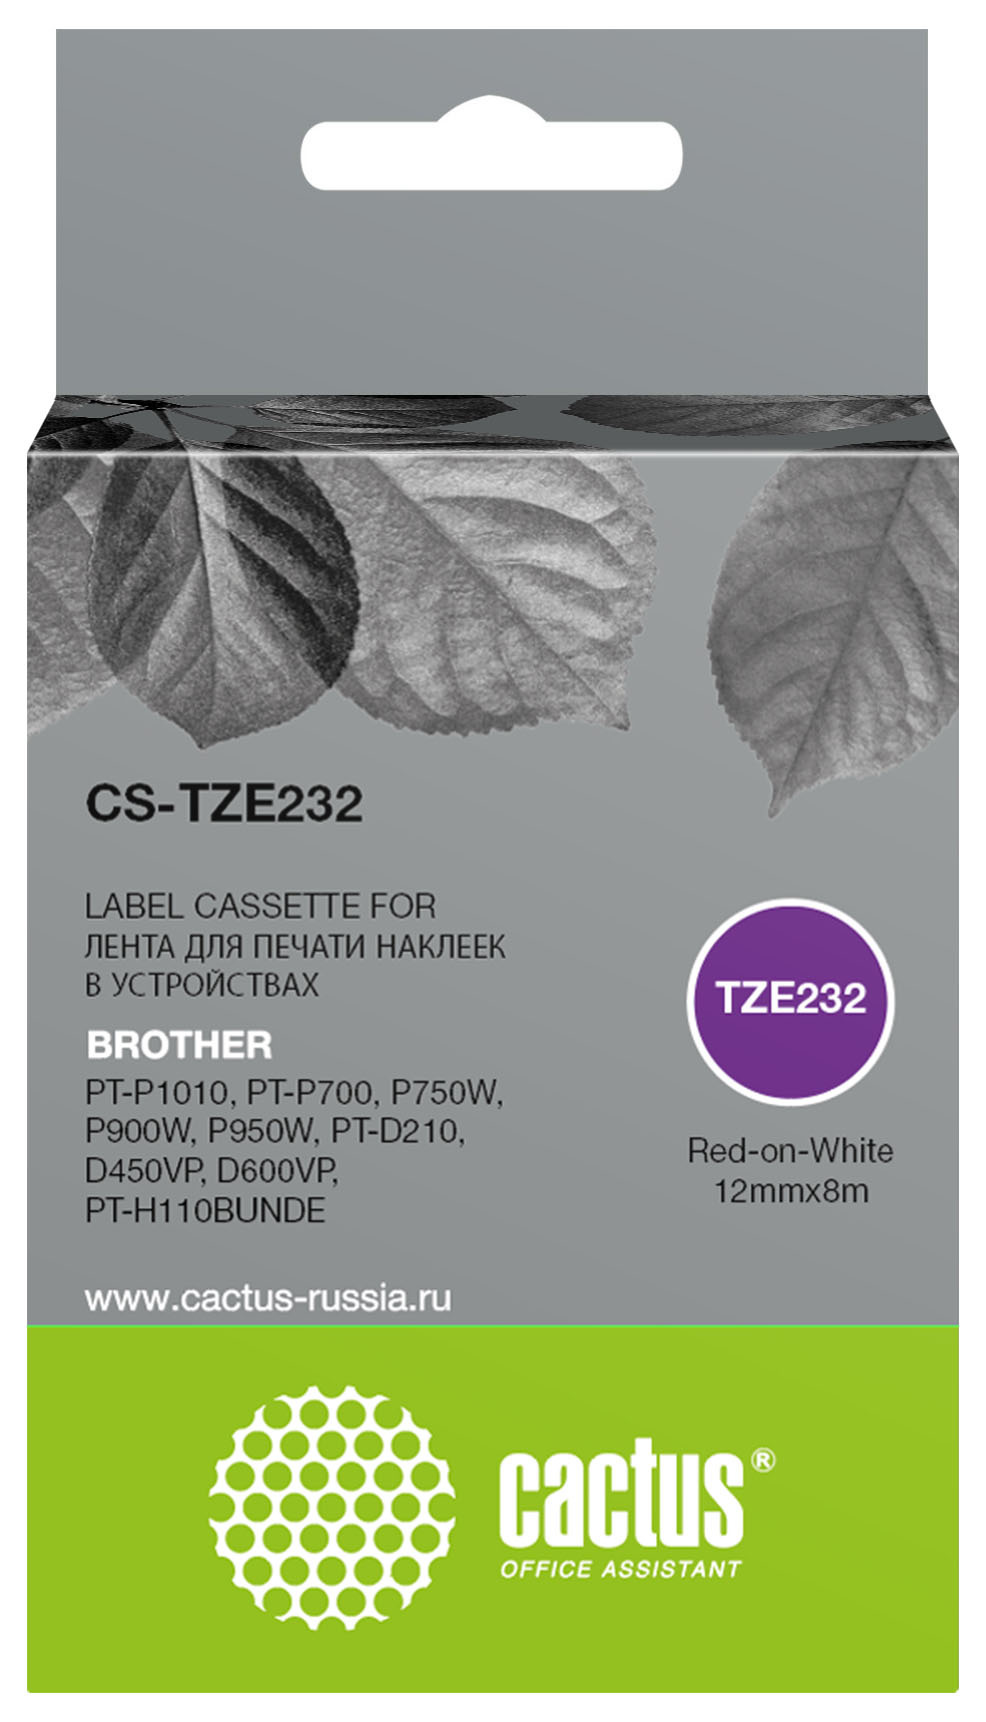   Cactus CS-TZE232 TZe-232   Brother PT-P1010, PT-P700, P750W, P900W, P950W, PT-D210, D450VP, D600VP, PT-H110BUNDE